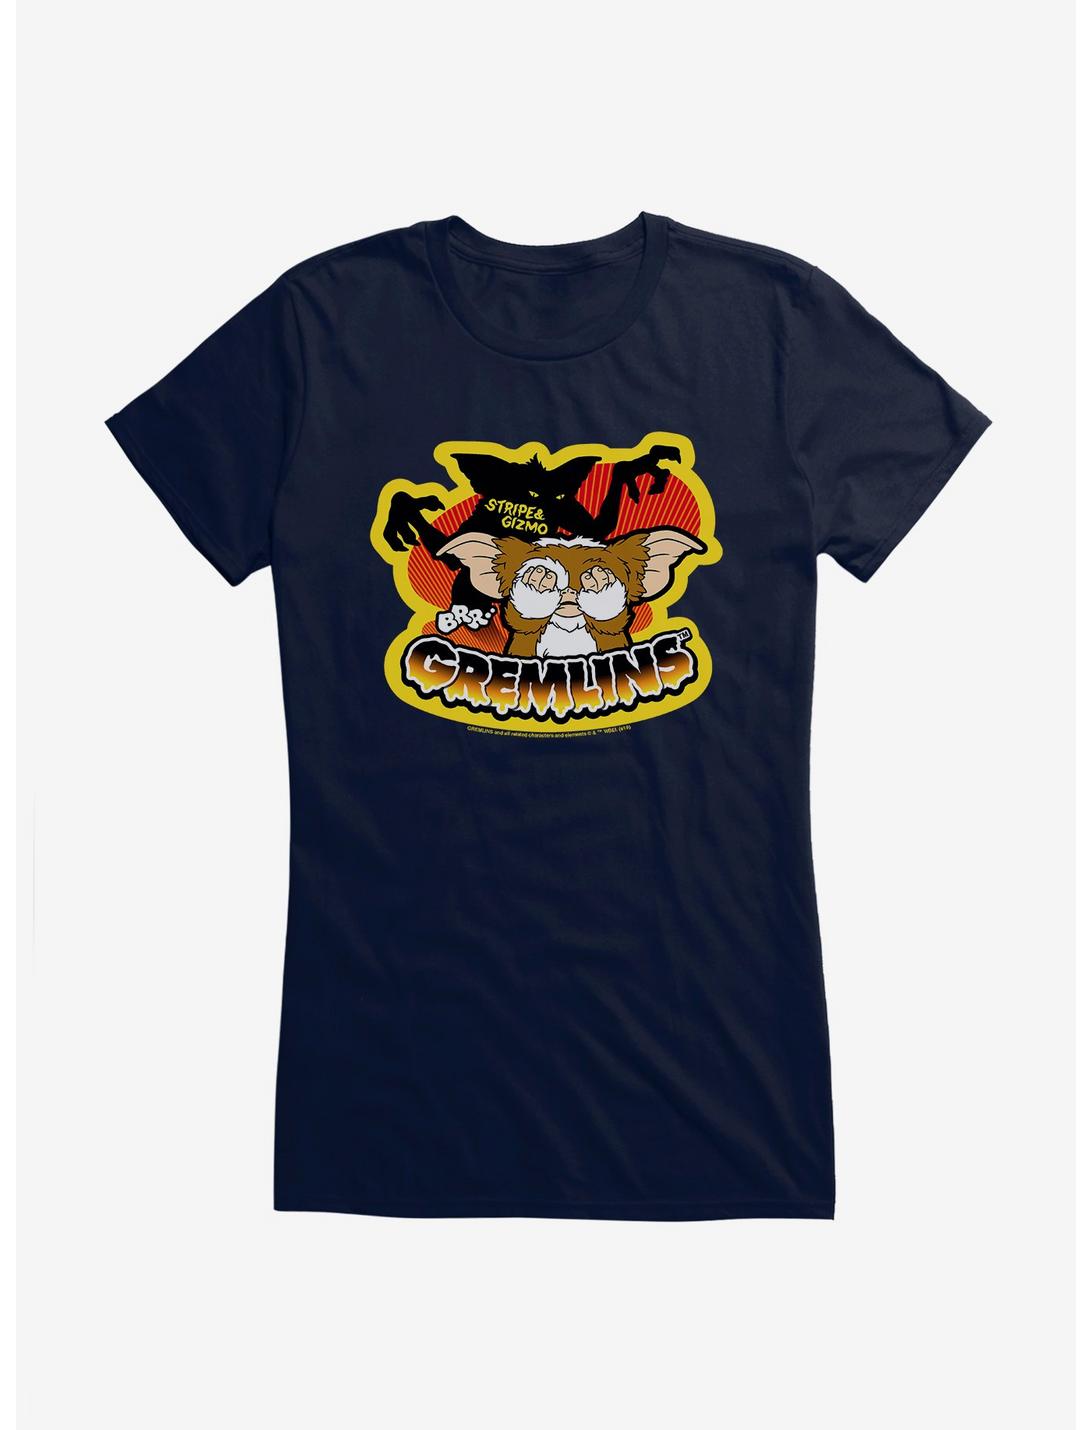 Gremlins Gizmo Stripe And Afraid Gizmo Door Girls T-Shirt, , hi-res